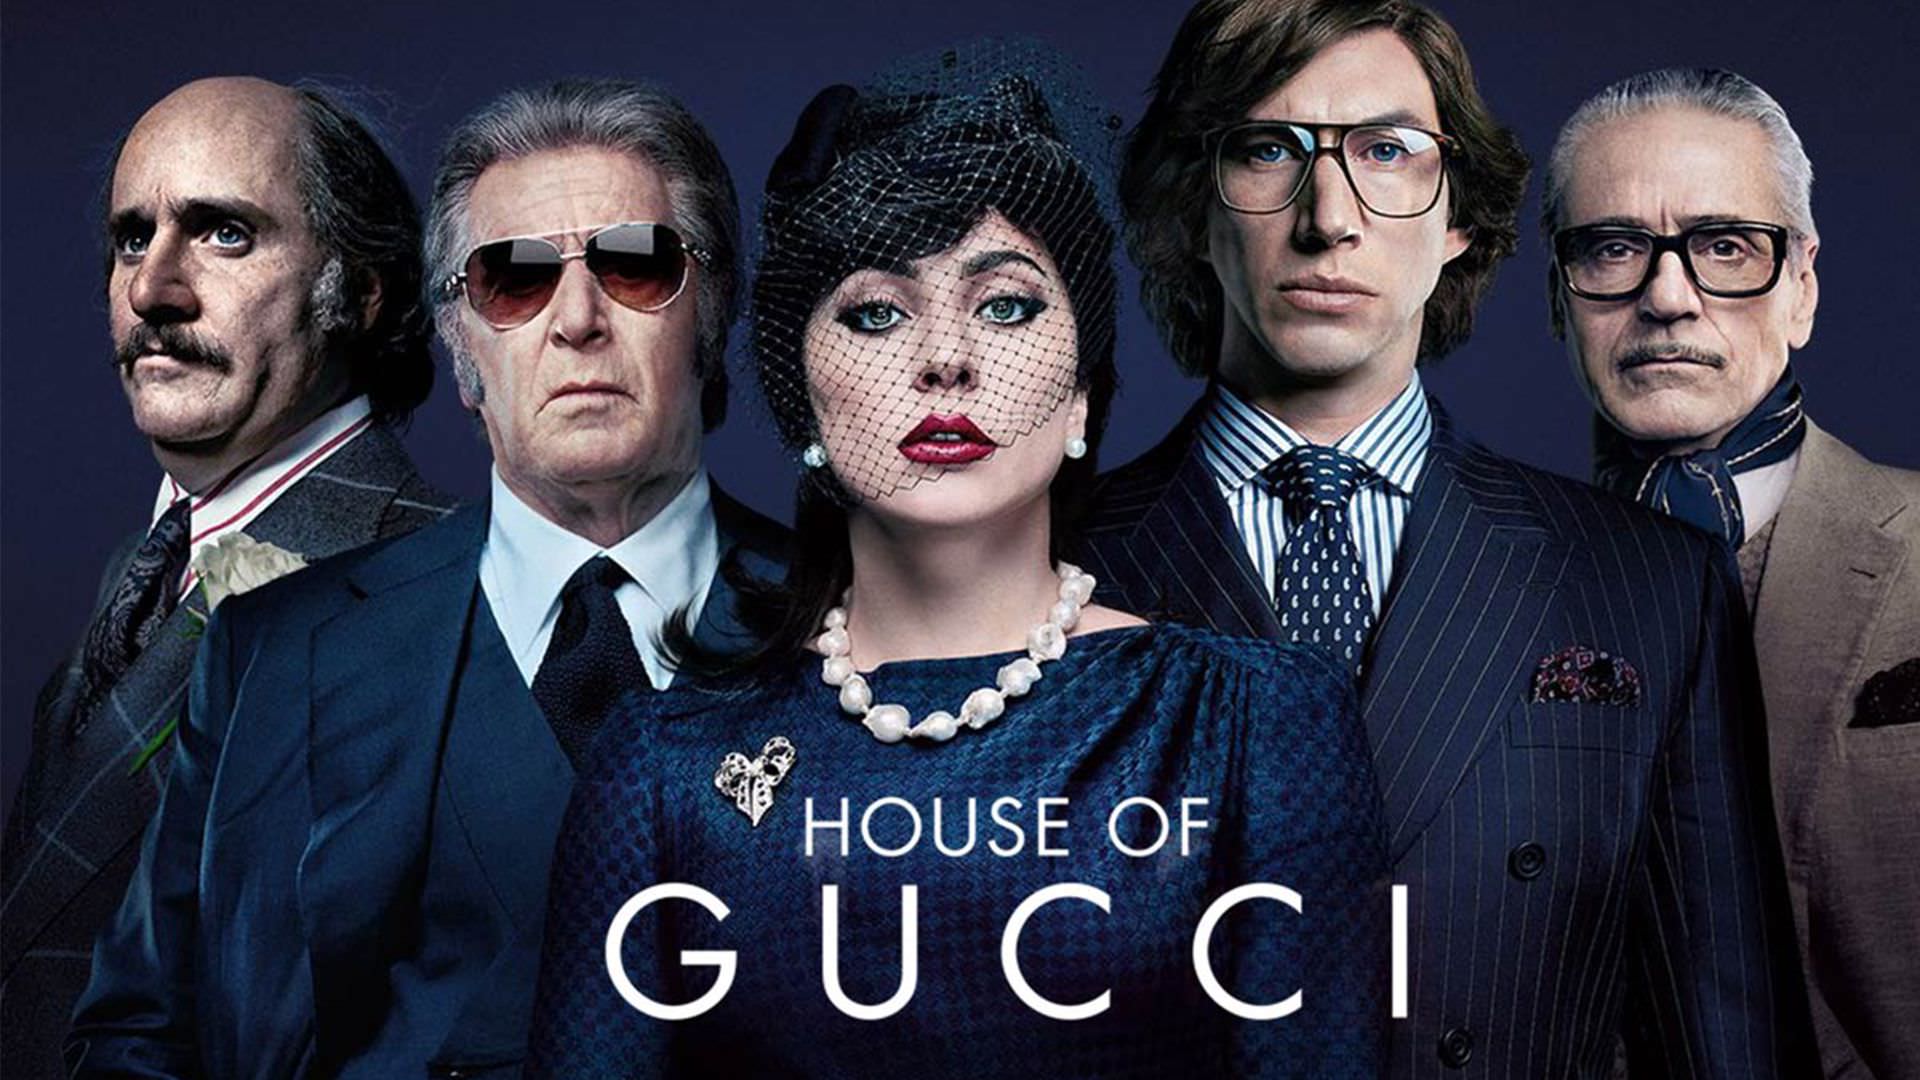 حضور متفاوت لیدی گاگا و جرد لتو در تریلر جدید فیلم House of Gucci